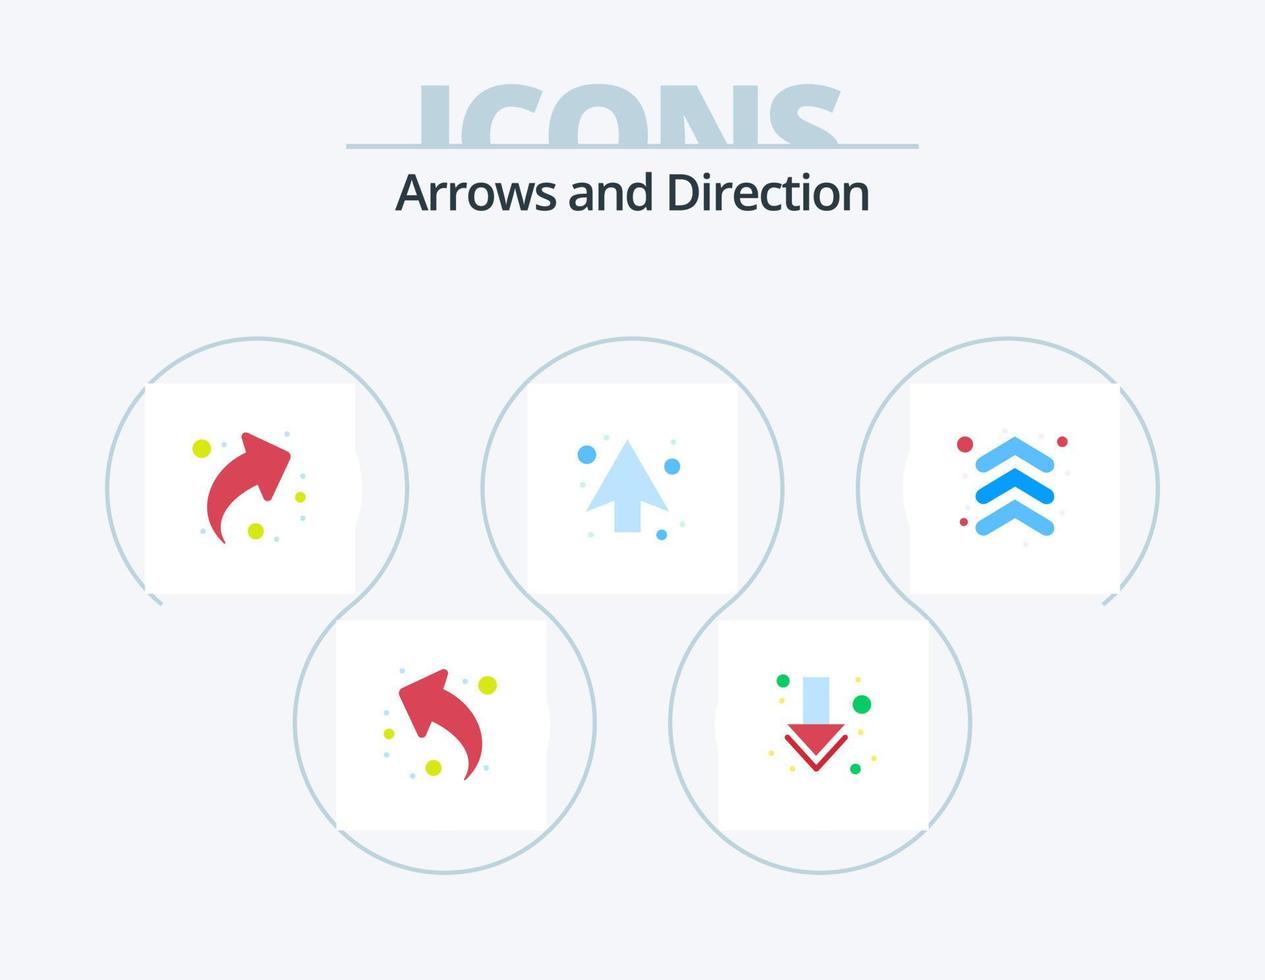 paquete de iconos planos de flecha 5 diseño de iconos. . . Cuota. dirección. flechas vector